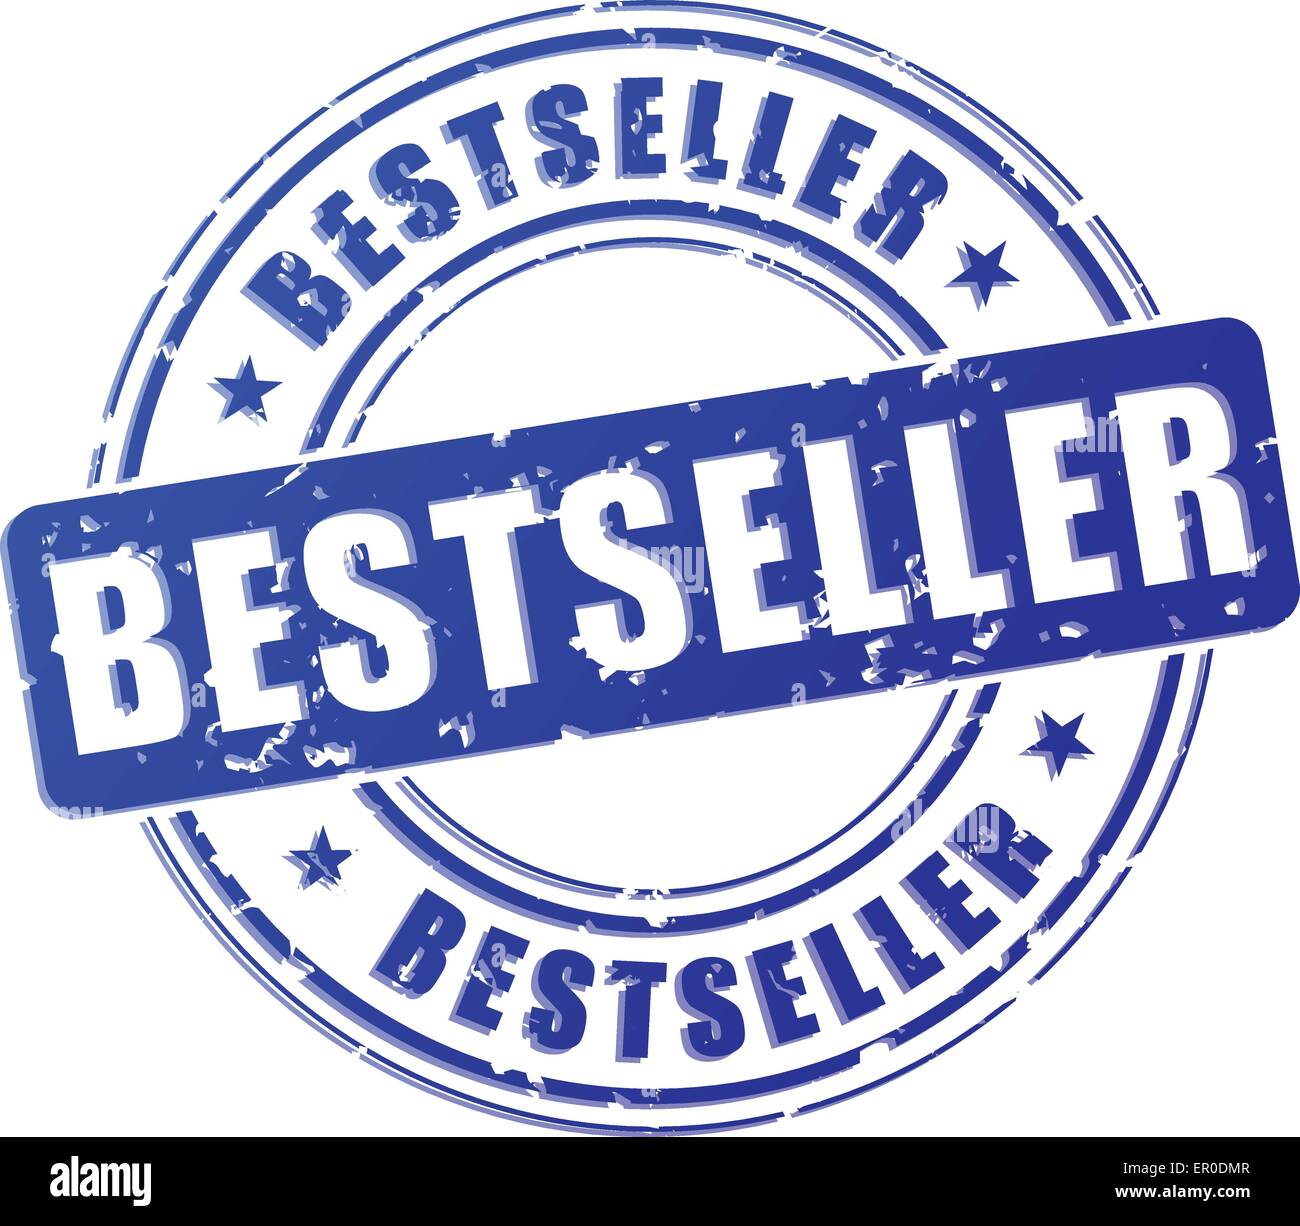 Illustrazione di best seller timbro blu su sfondo bianco Illustrazione Vettoriale